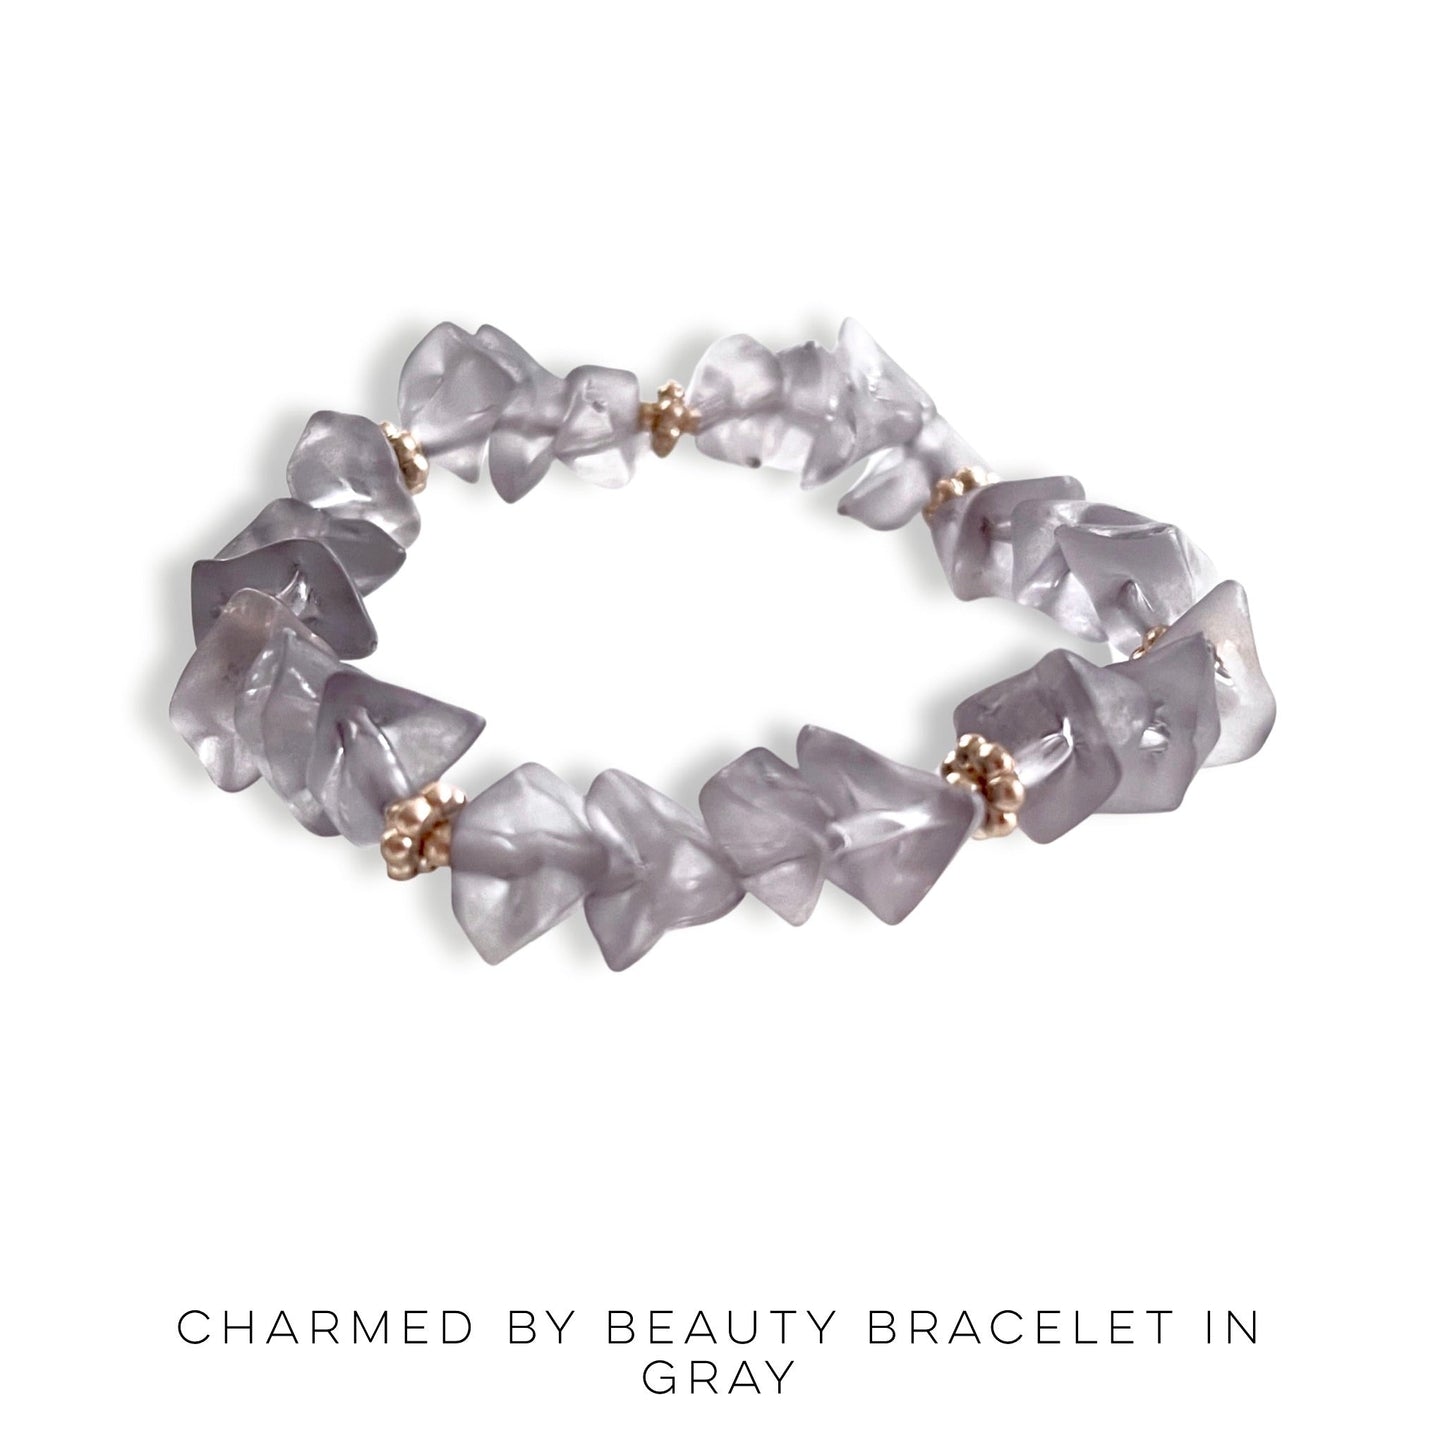 Charmed by Beauty Bracelet in Gray